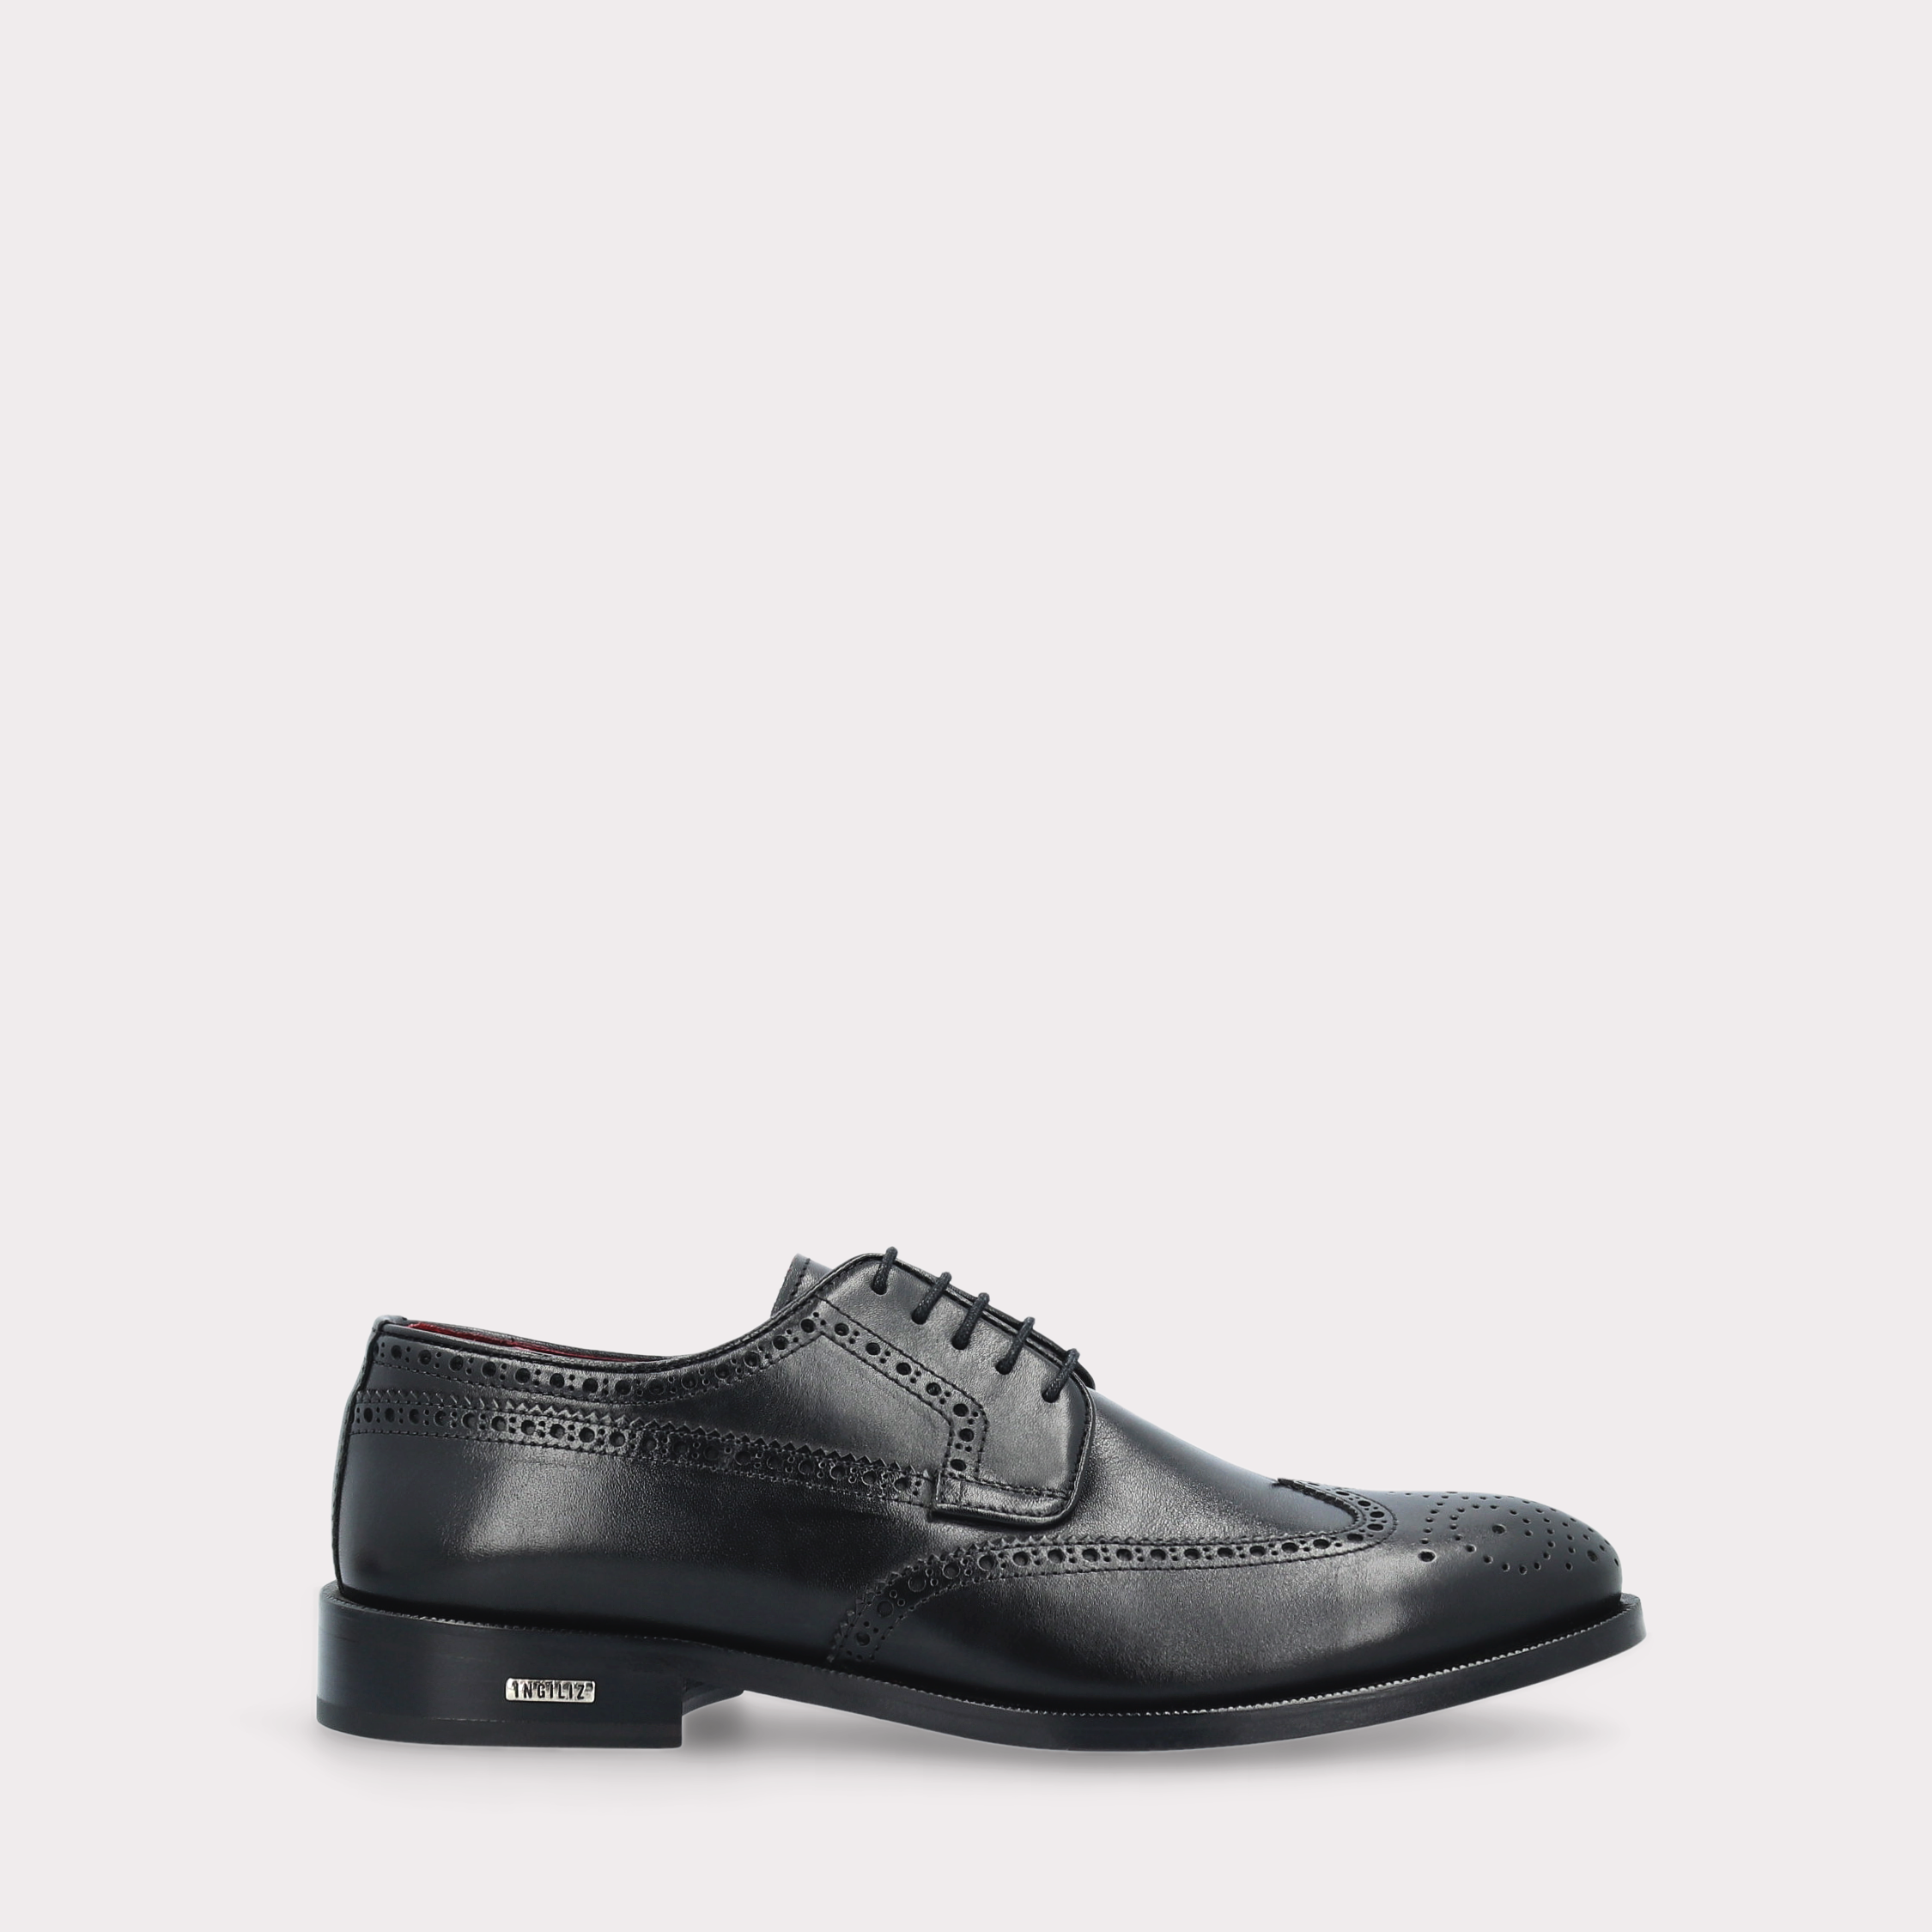 BERGAMO 01 black leather derby shoes